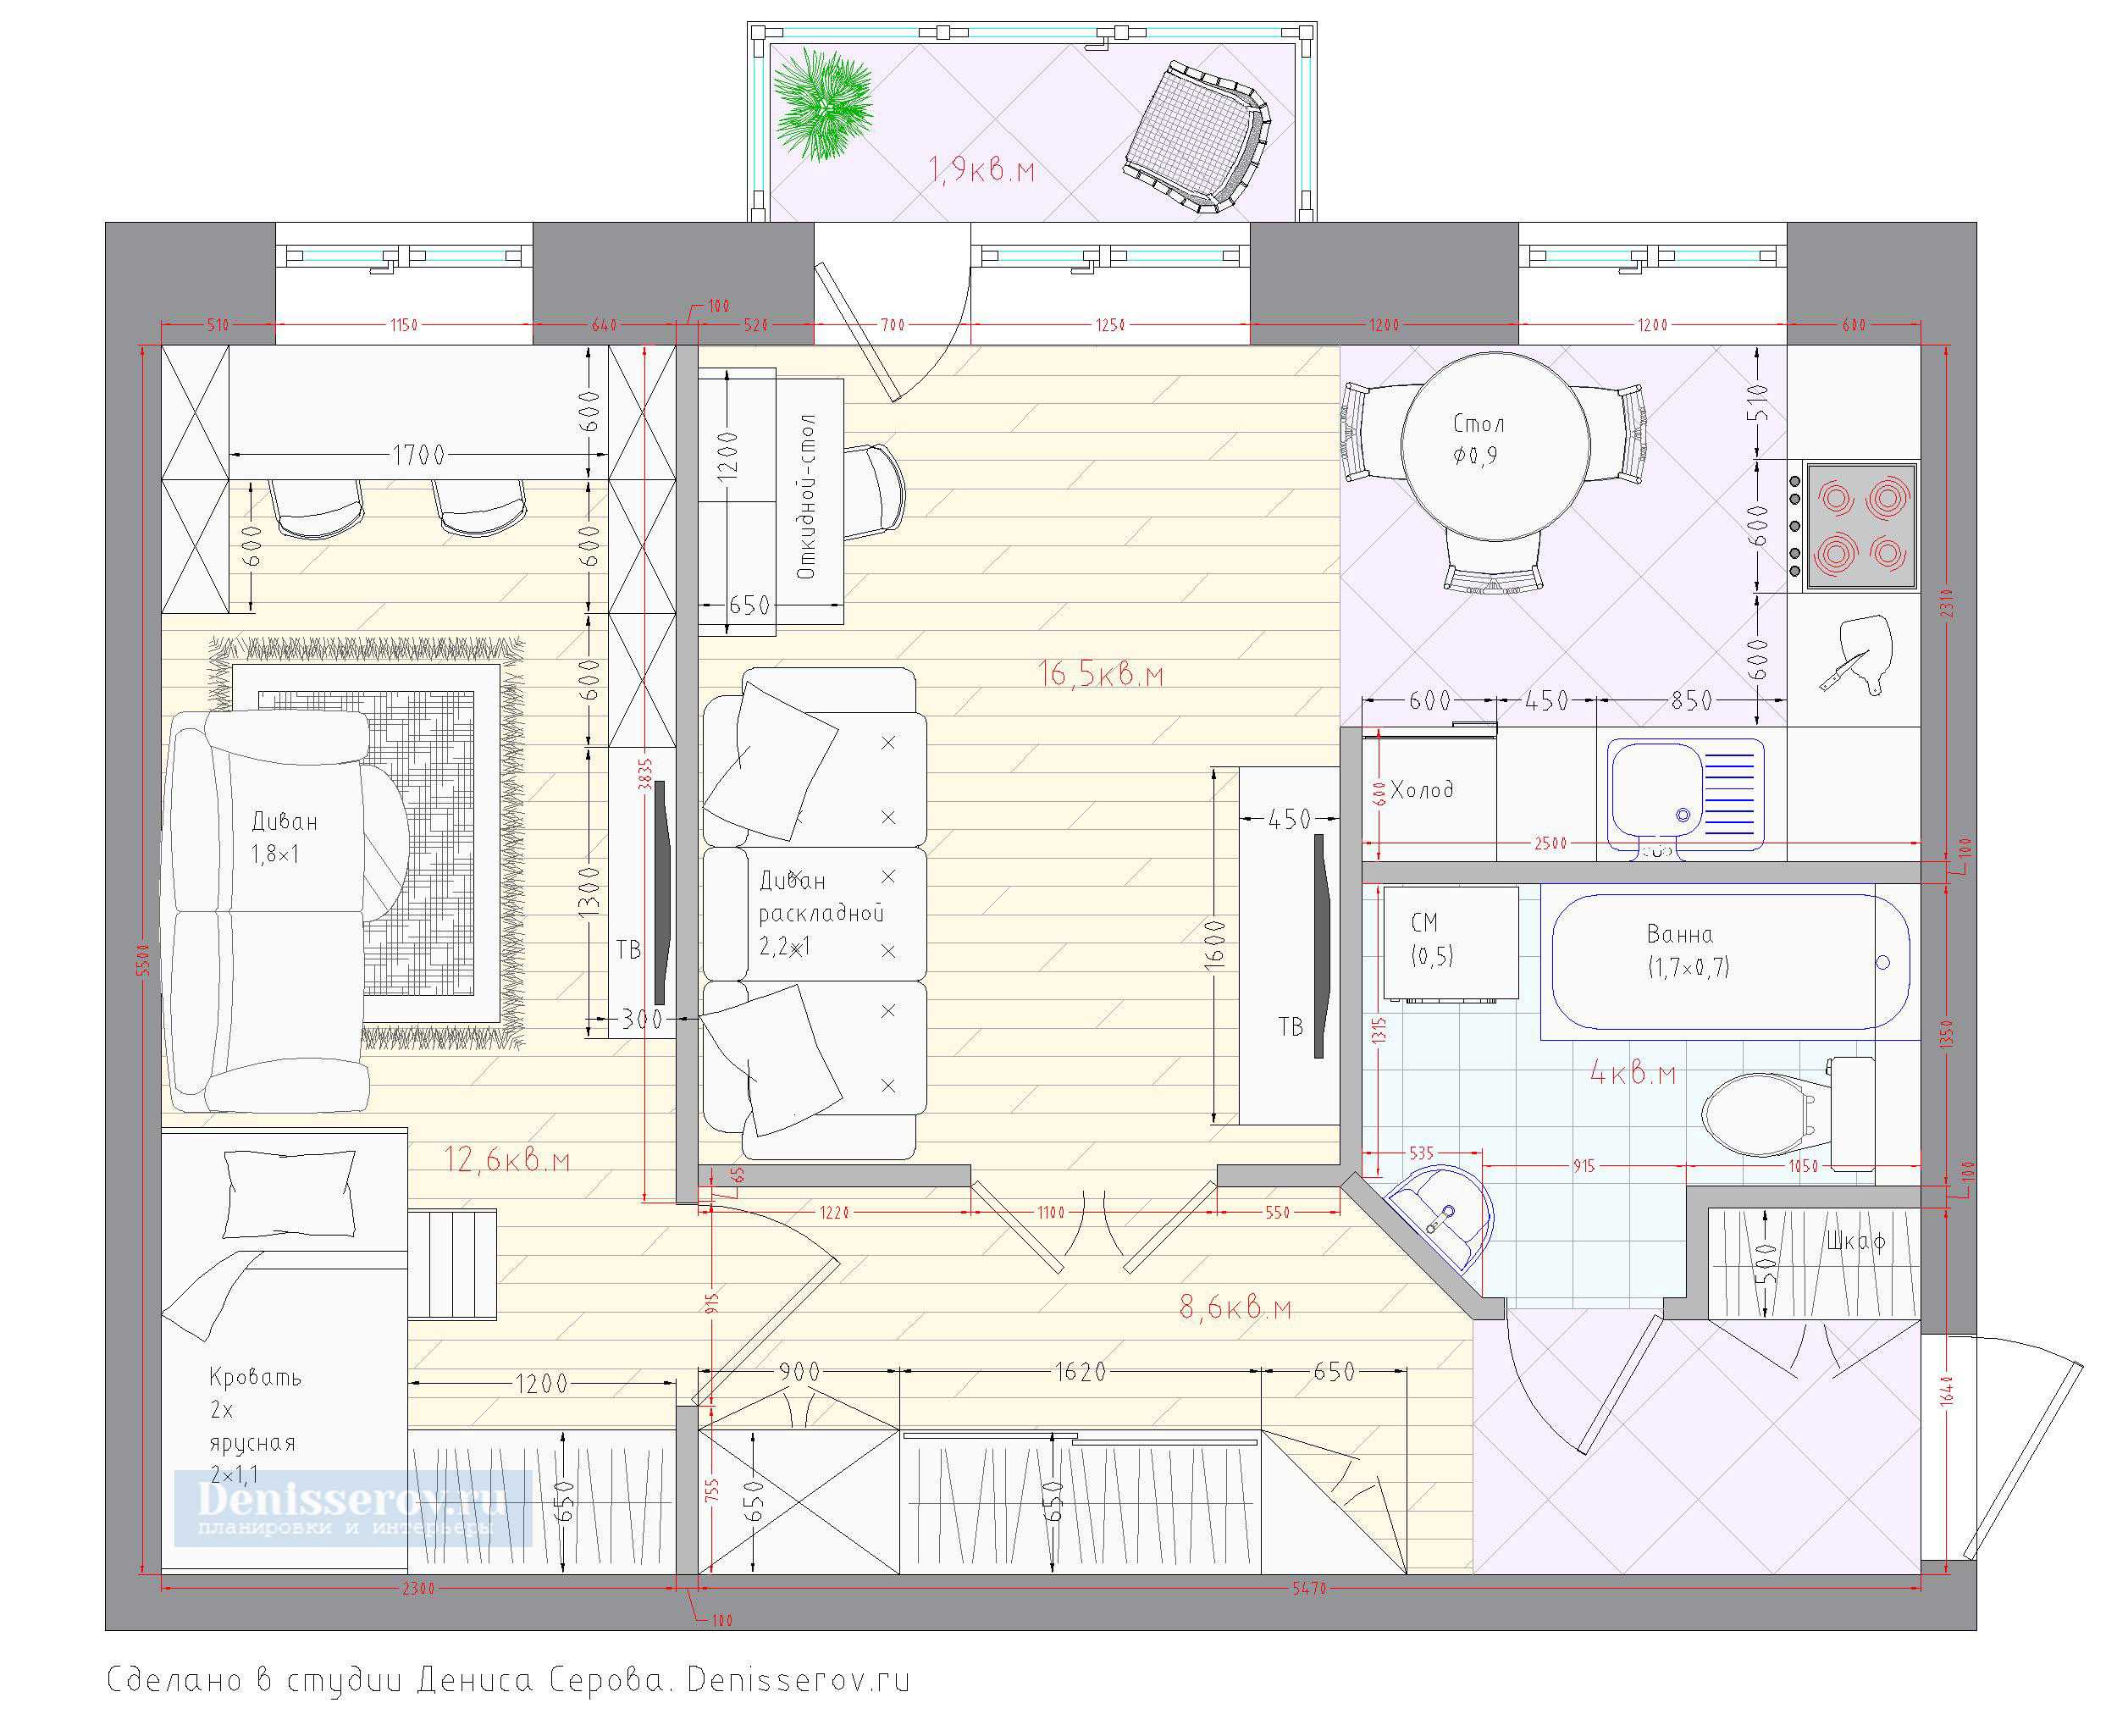 Планировка 3-х комнатной квартиры в  «хрущевке»: красивые примеры дизайна интерьера